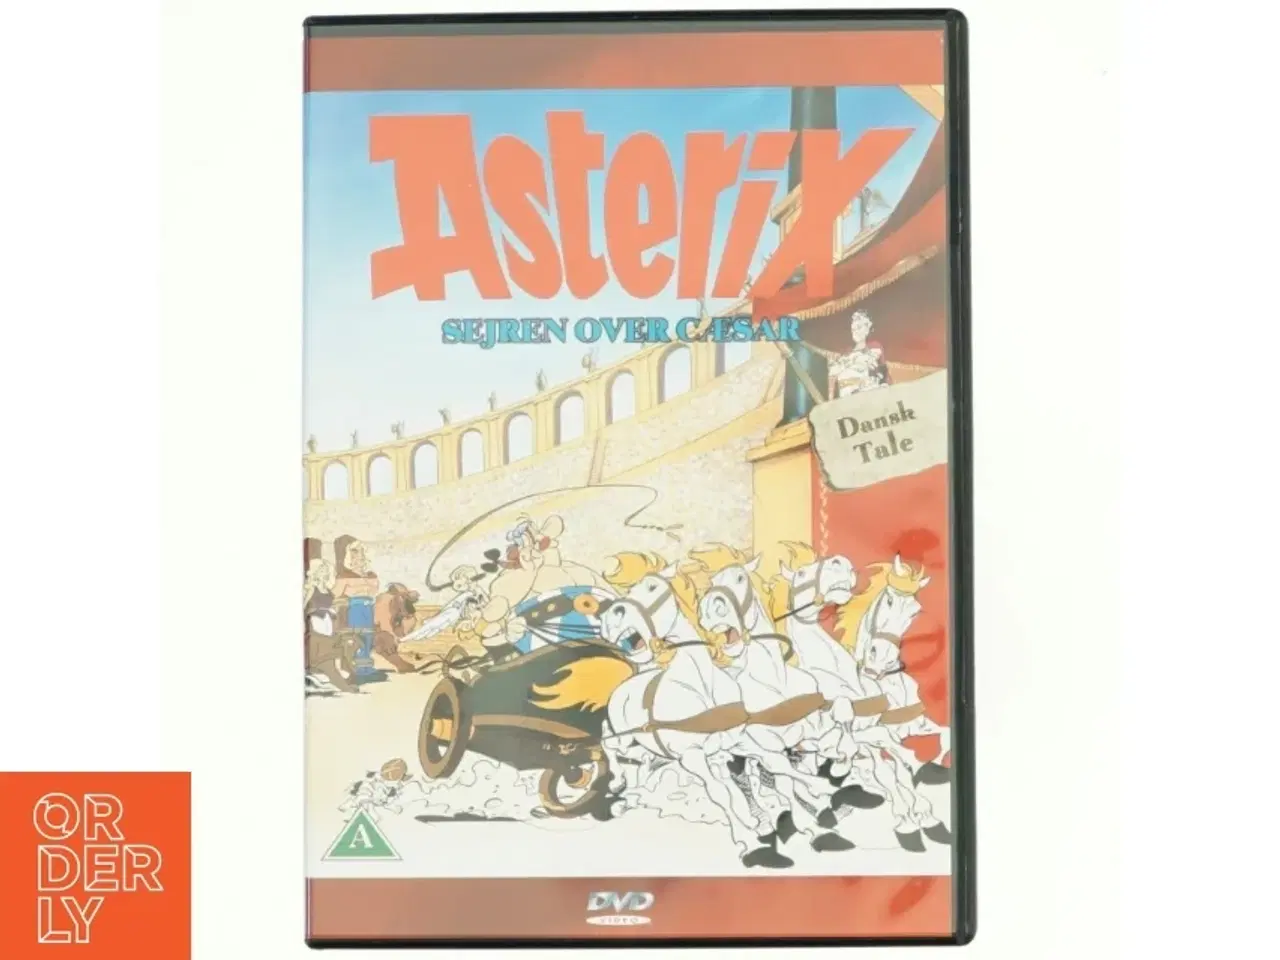 Billede 1 - Asterix, sejren over Cæsar